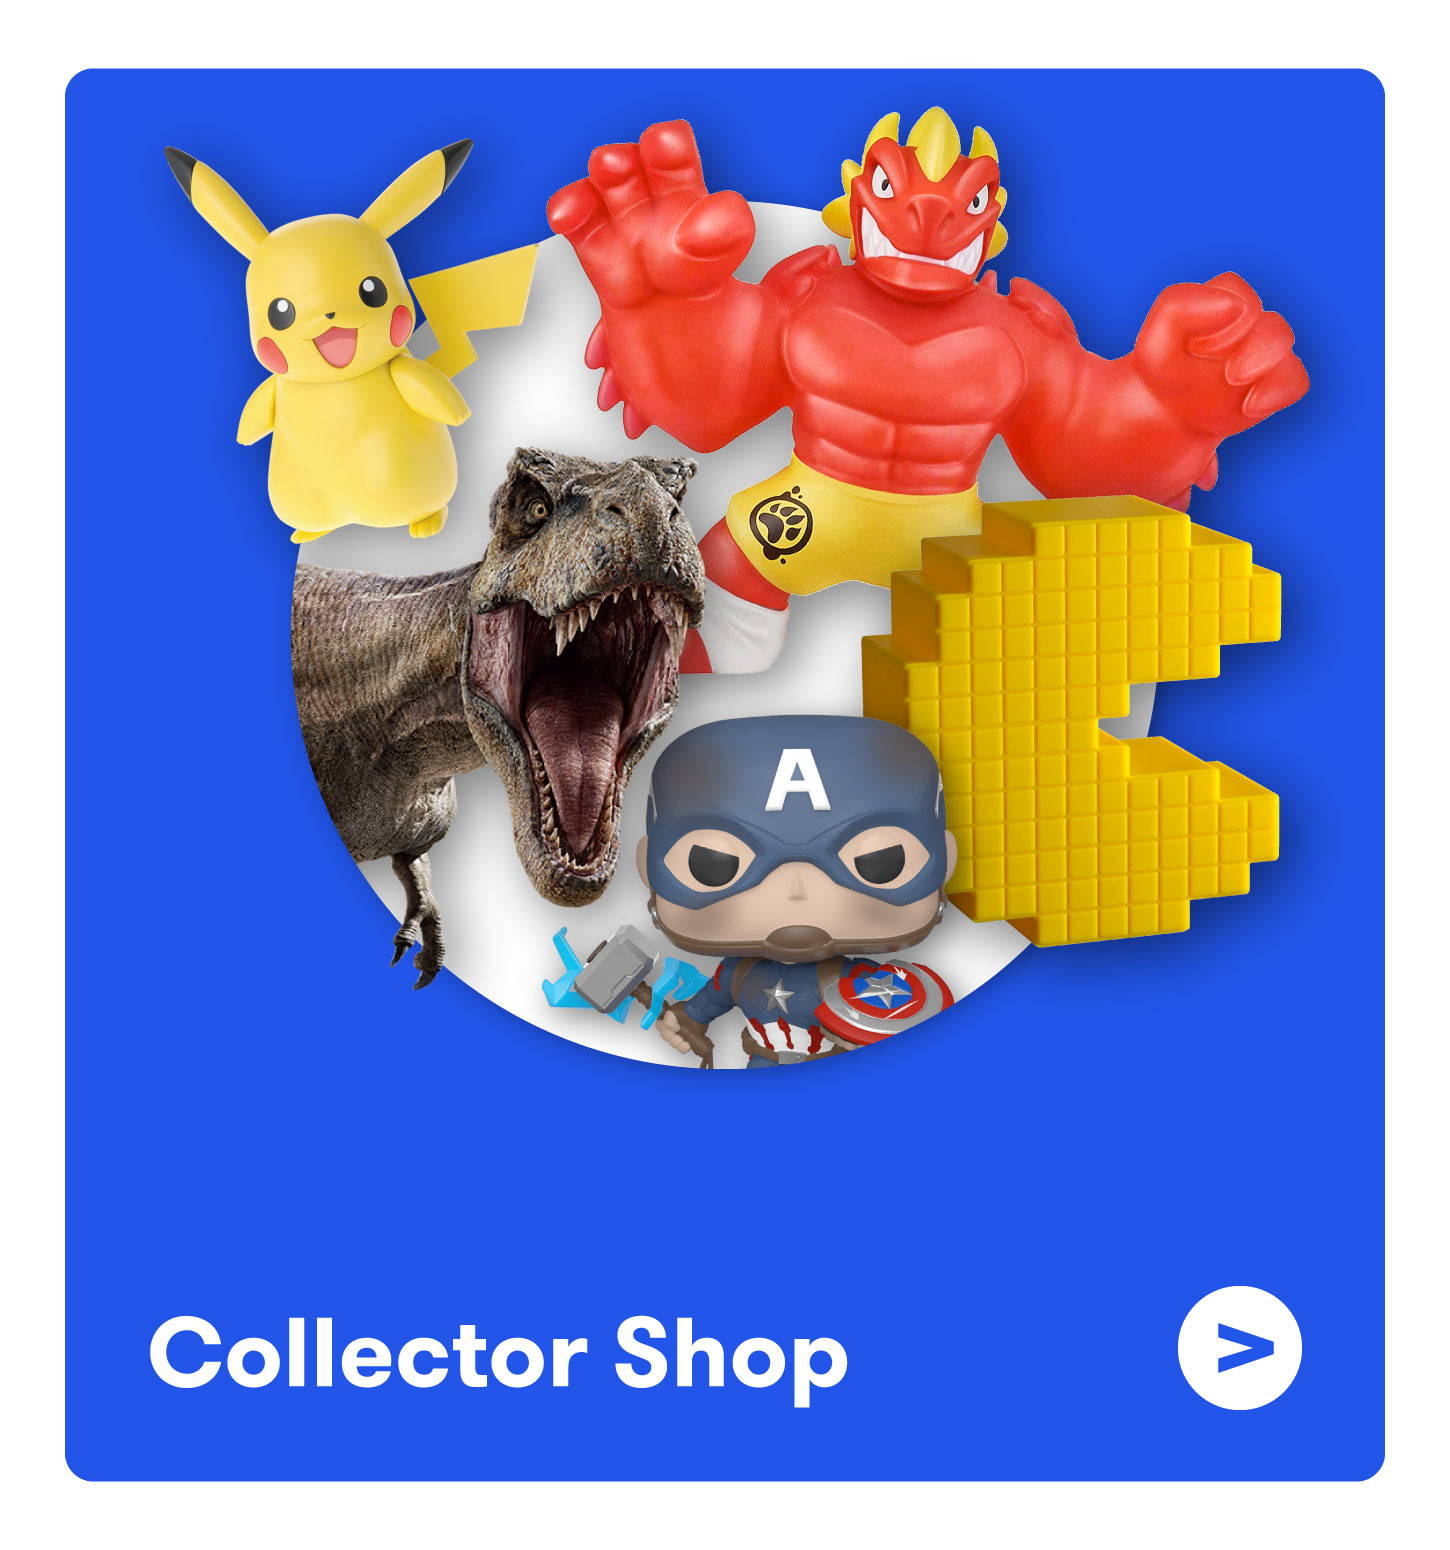 Collector Shop